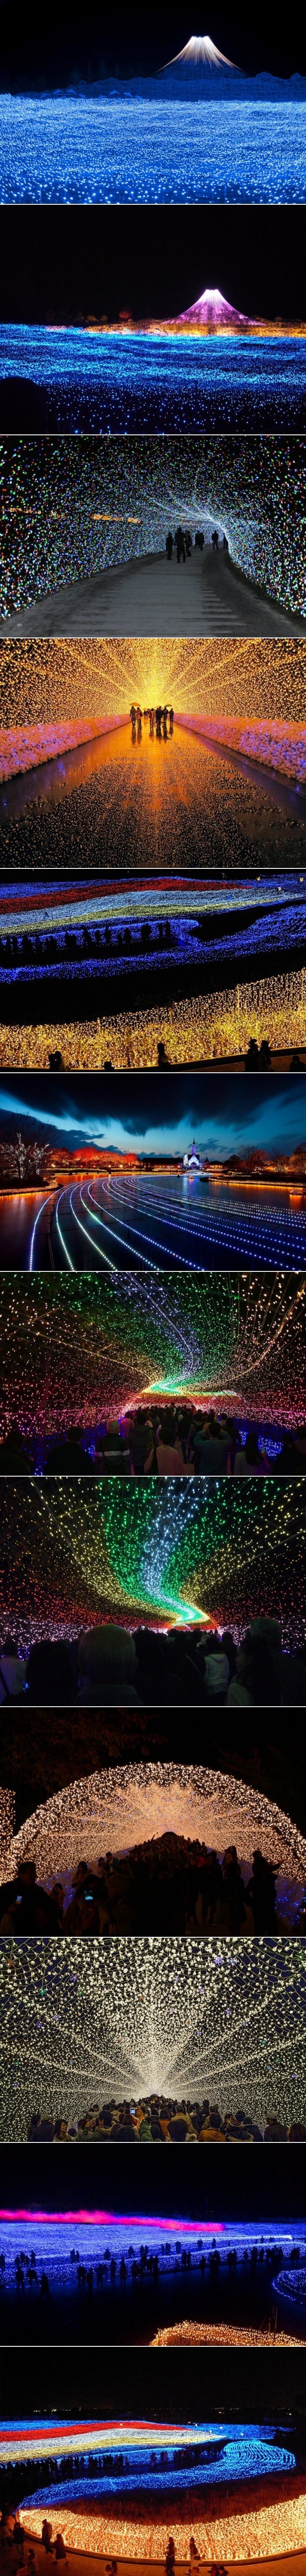 Svjetlosni festival u Japanu